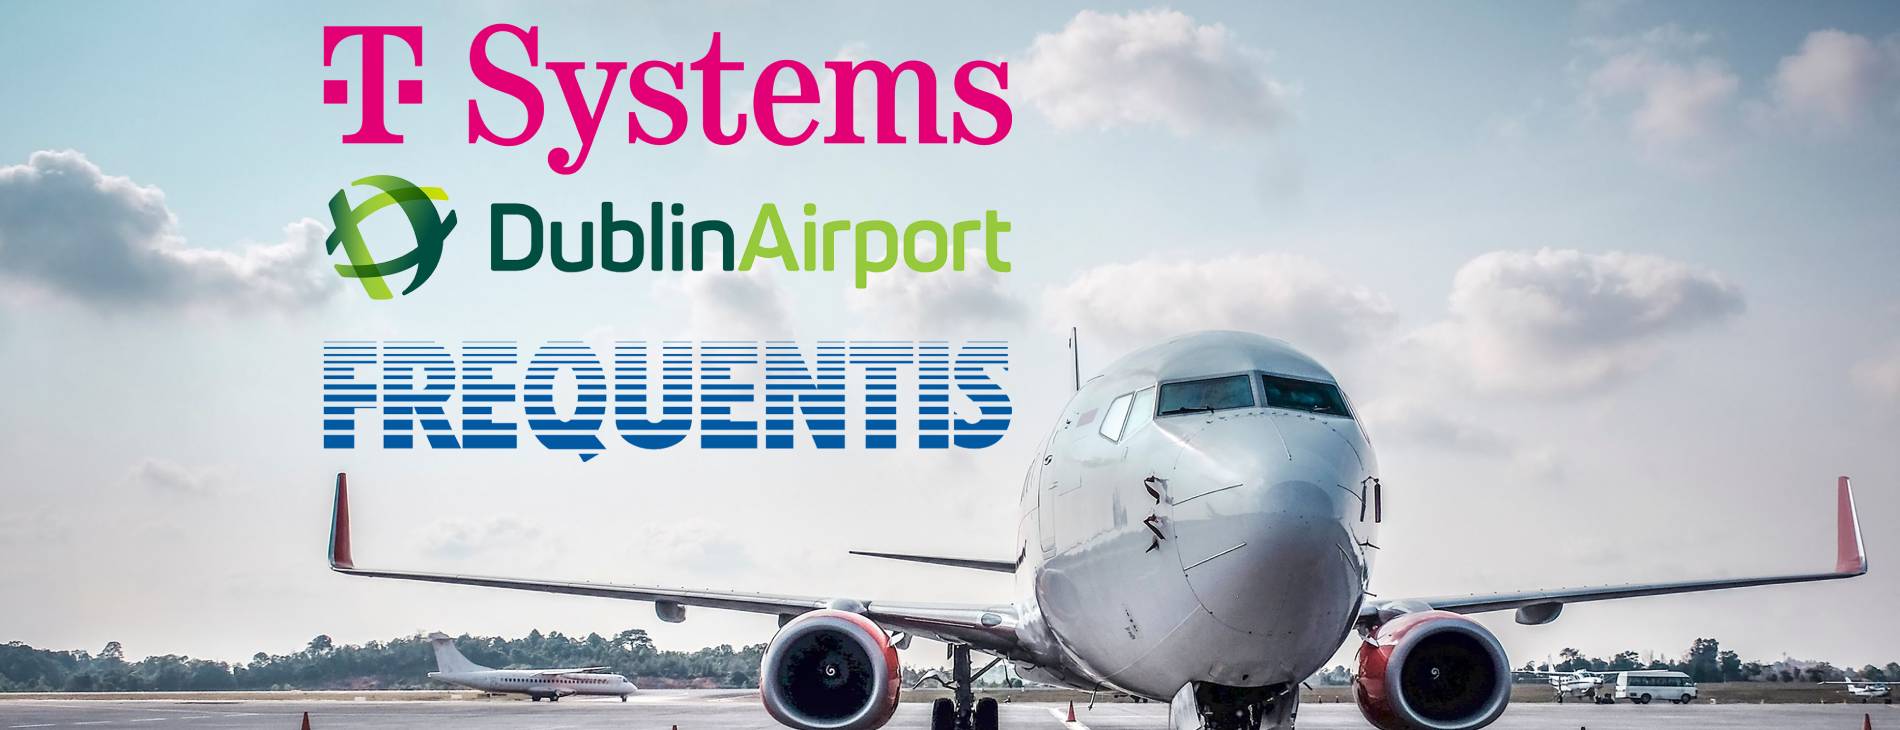 ein stehendes Flugzeug; im Himmel sind die logos von T Systems, Dublin Airport, and Frequentis zu sehen